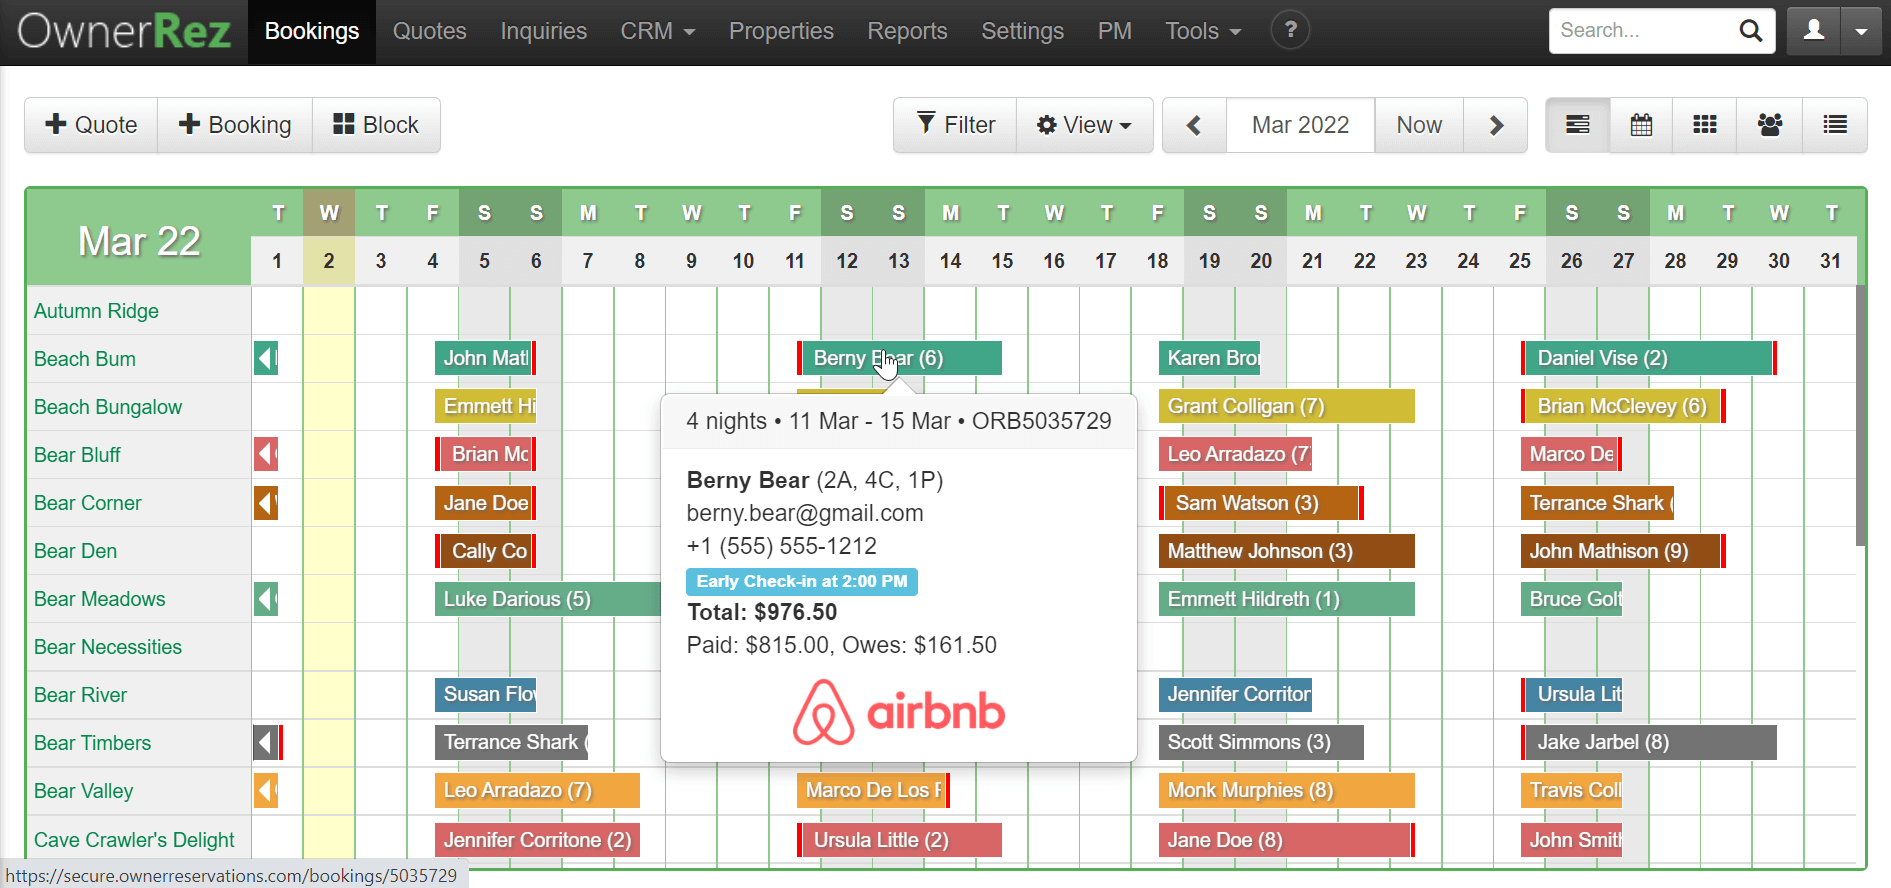 OwnerRez Software - Straightforward Booking Calendar